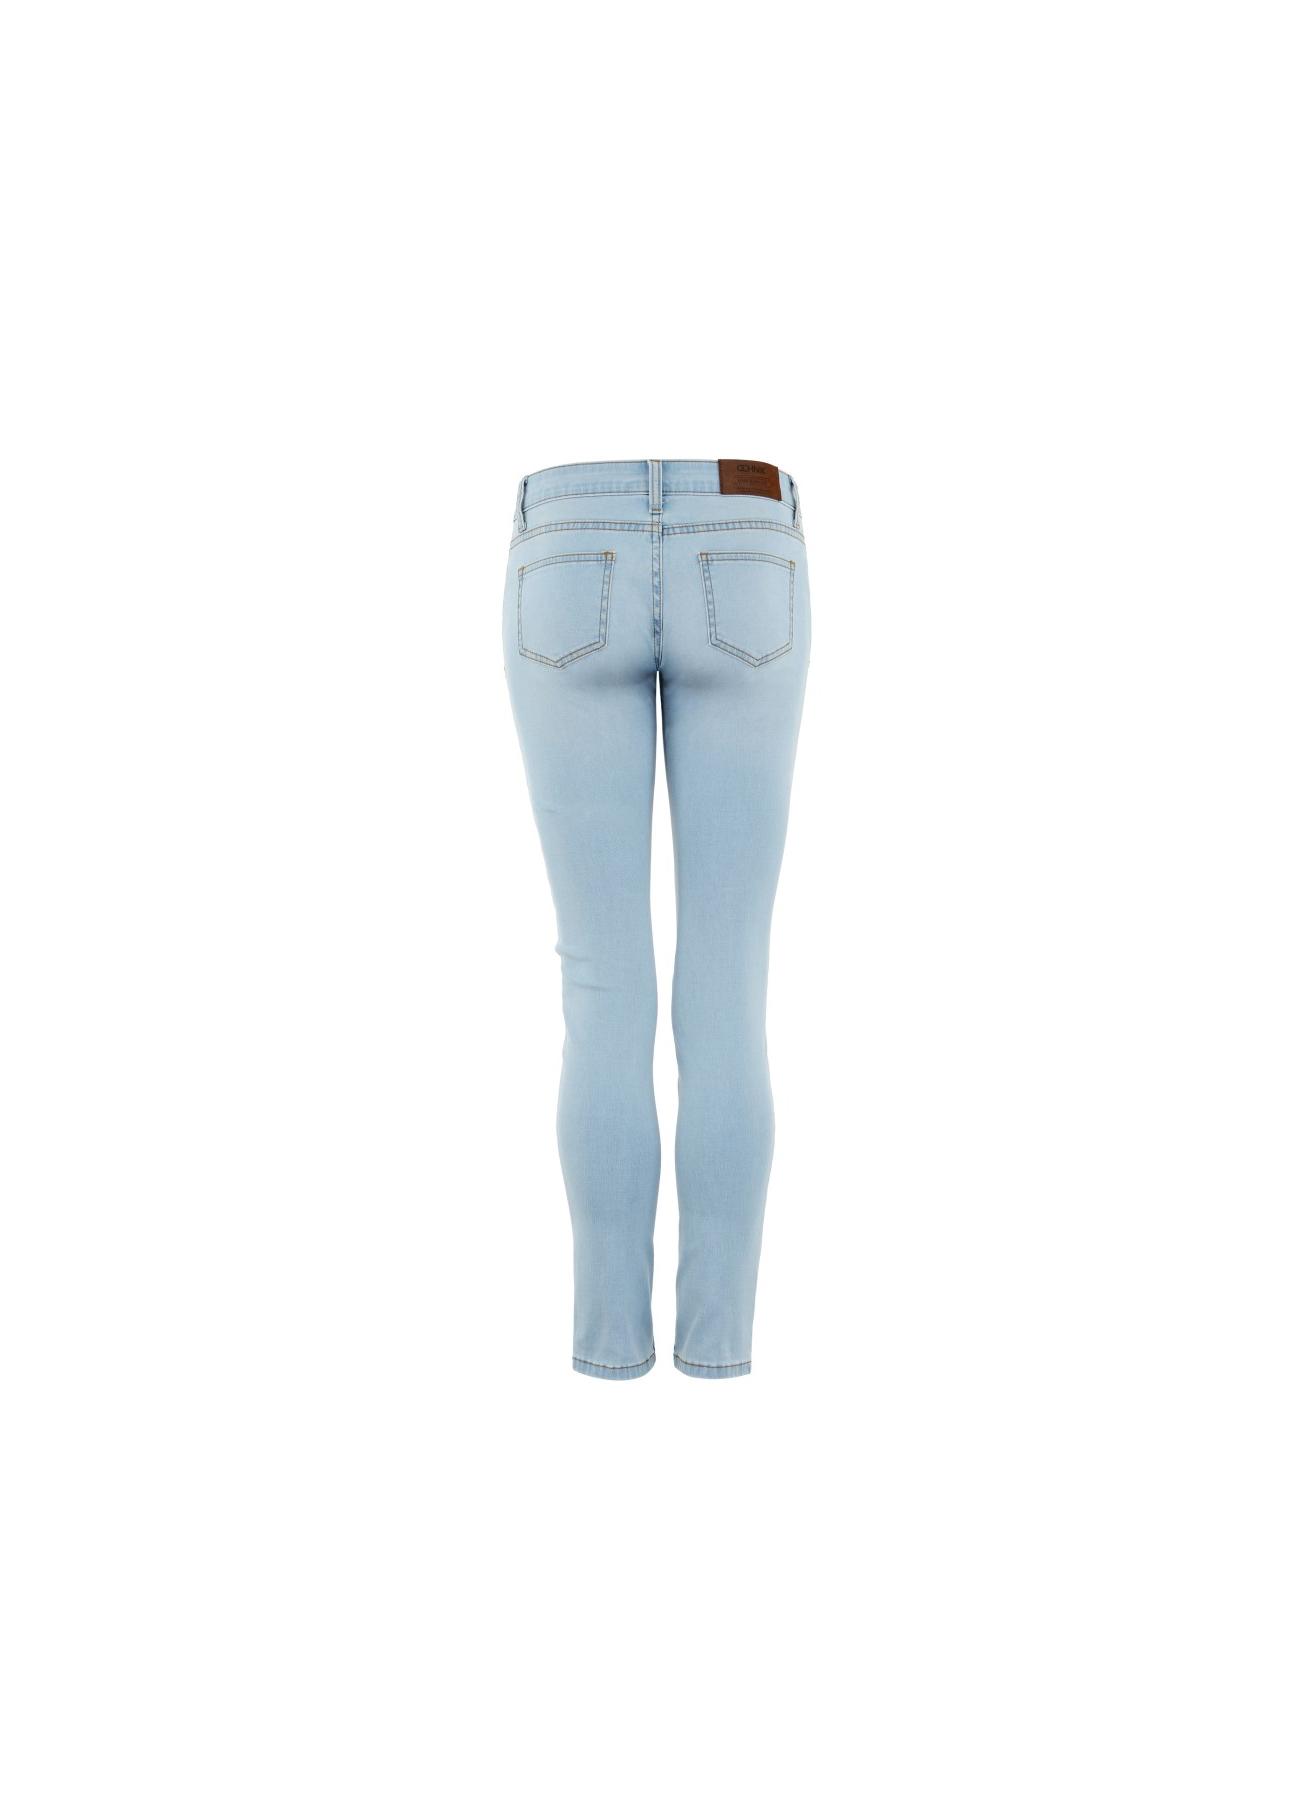 Spodnie damskie JEADT-0001-61(W17)